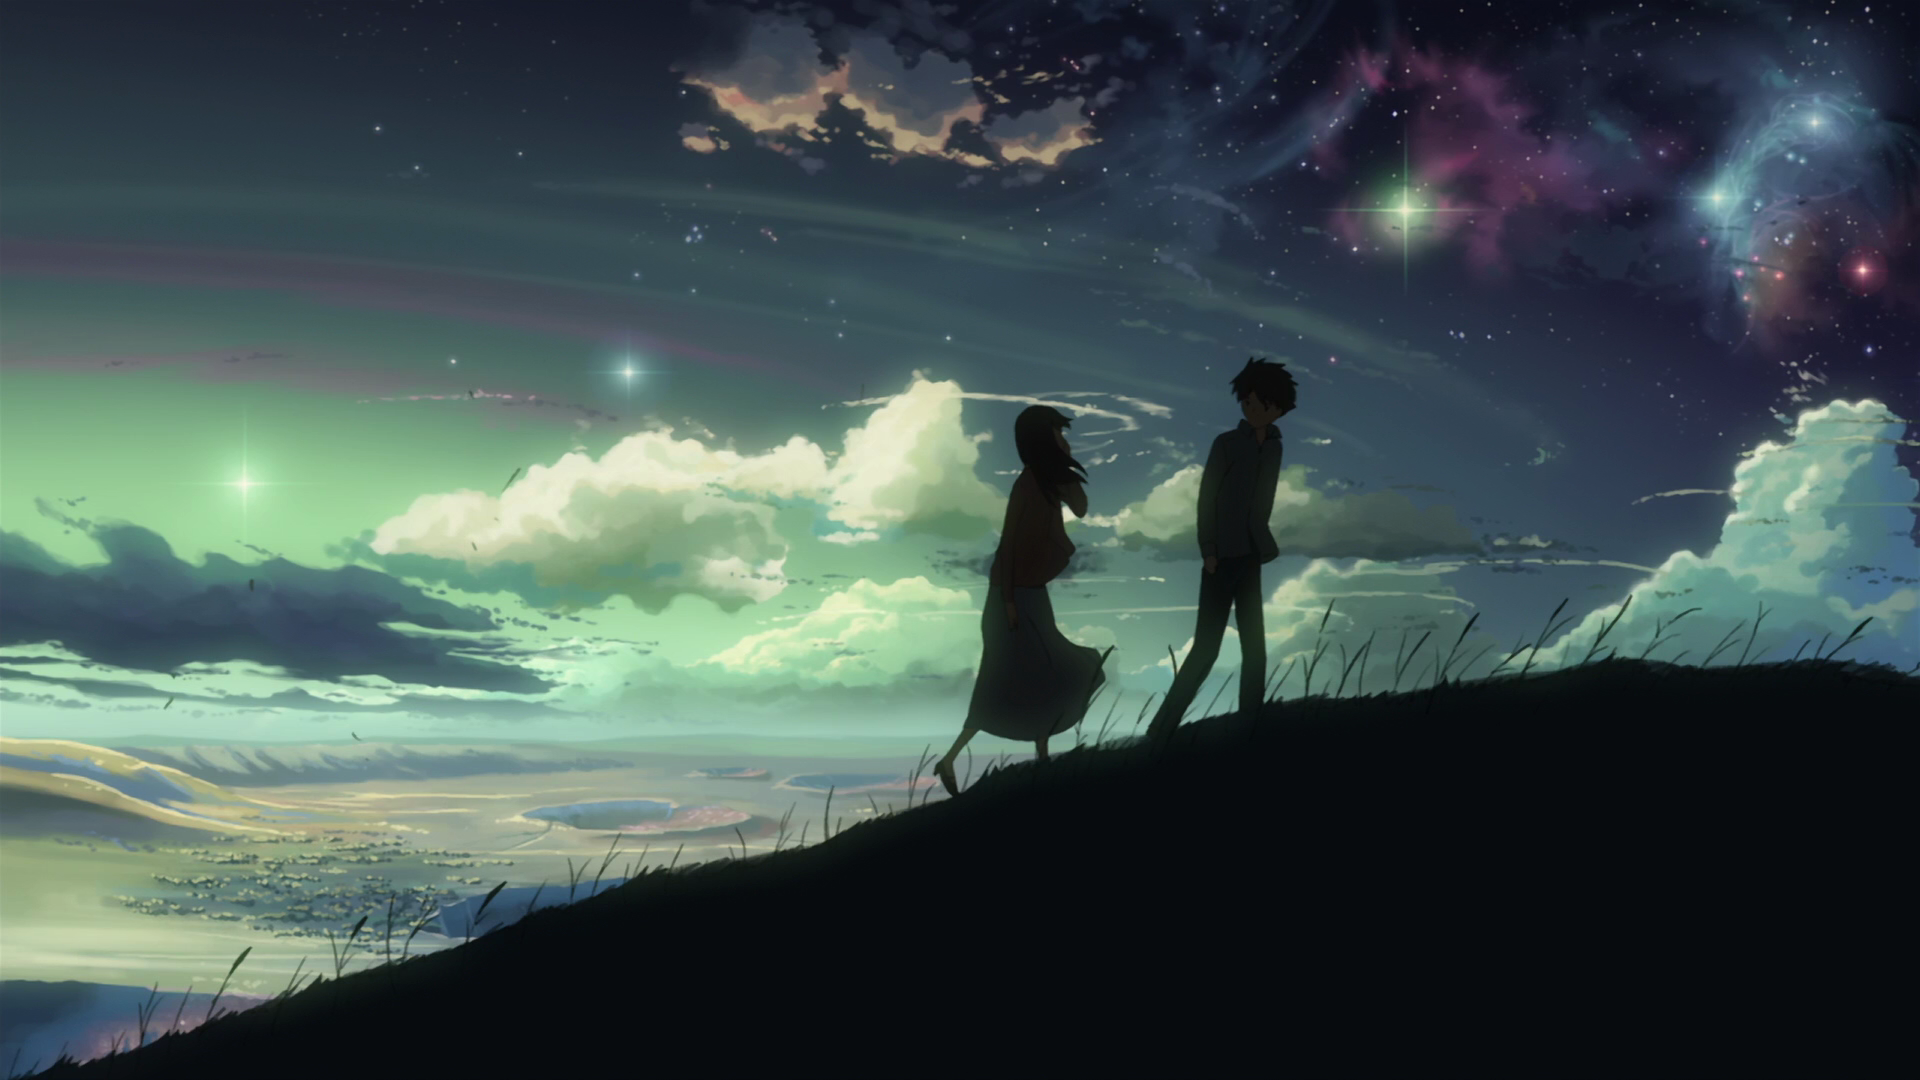 Makoto Shinkai, 5 Centimeters Per Second, skyscapes - desktop wallpaper